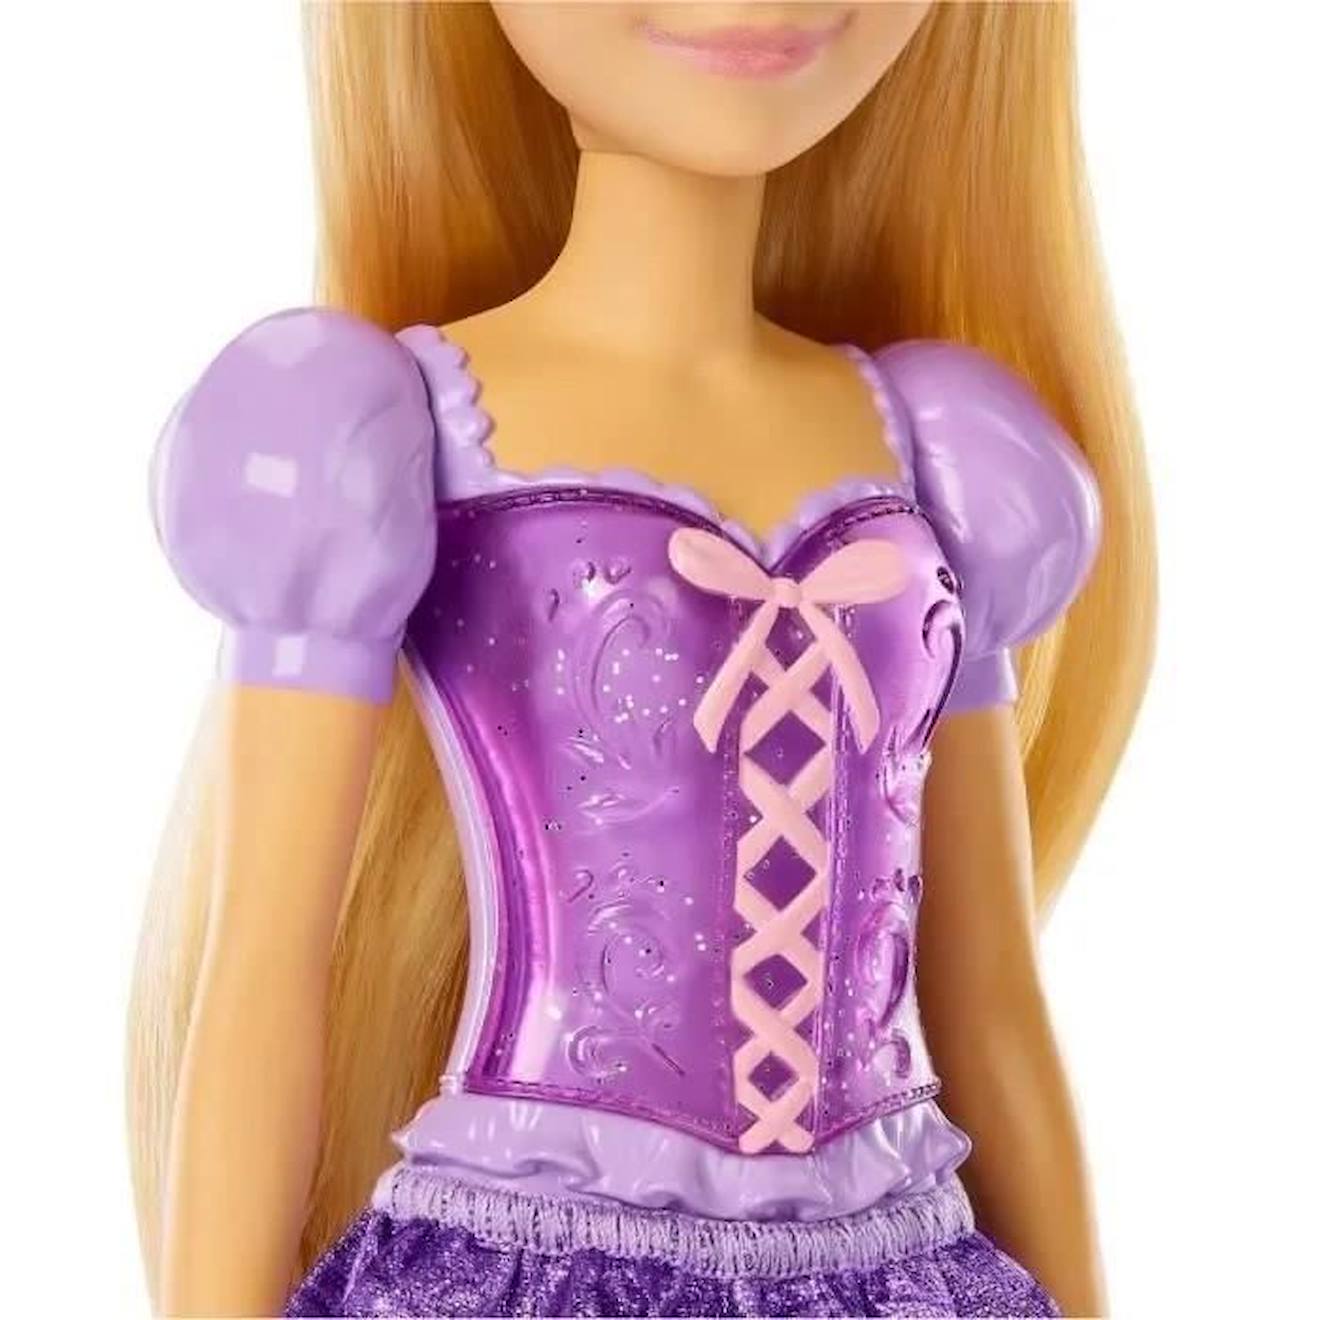 Disney princess - poupee cendrillon 29 cm, poupees